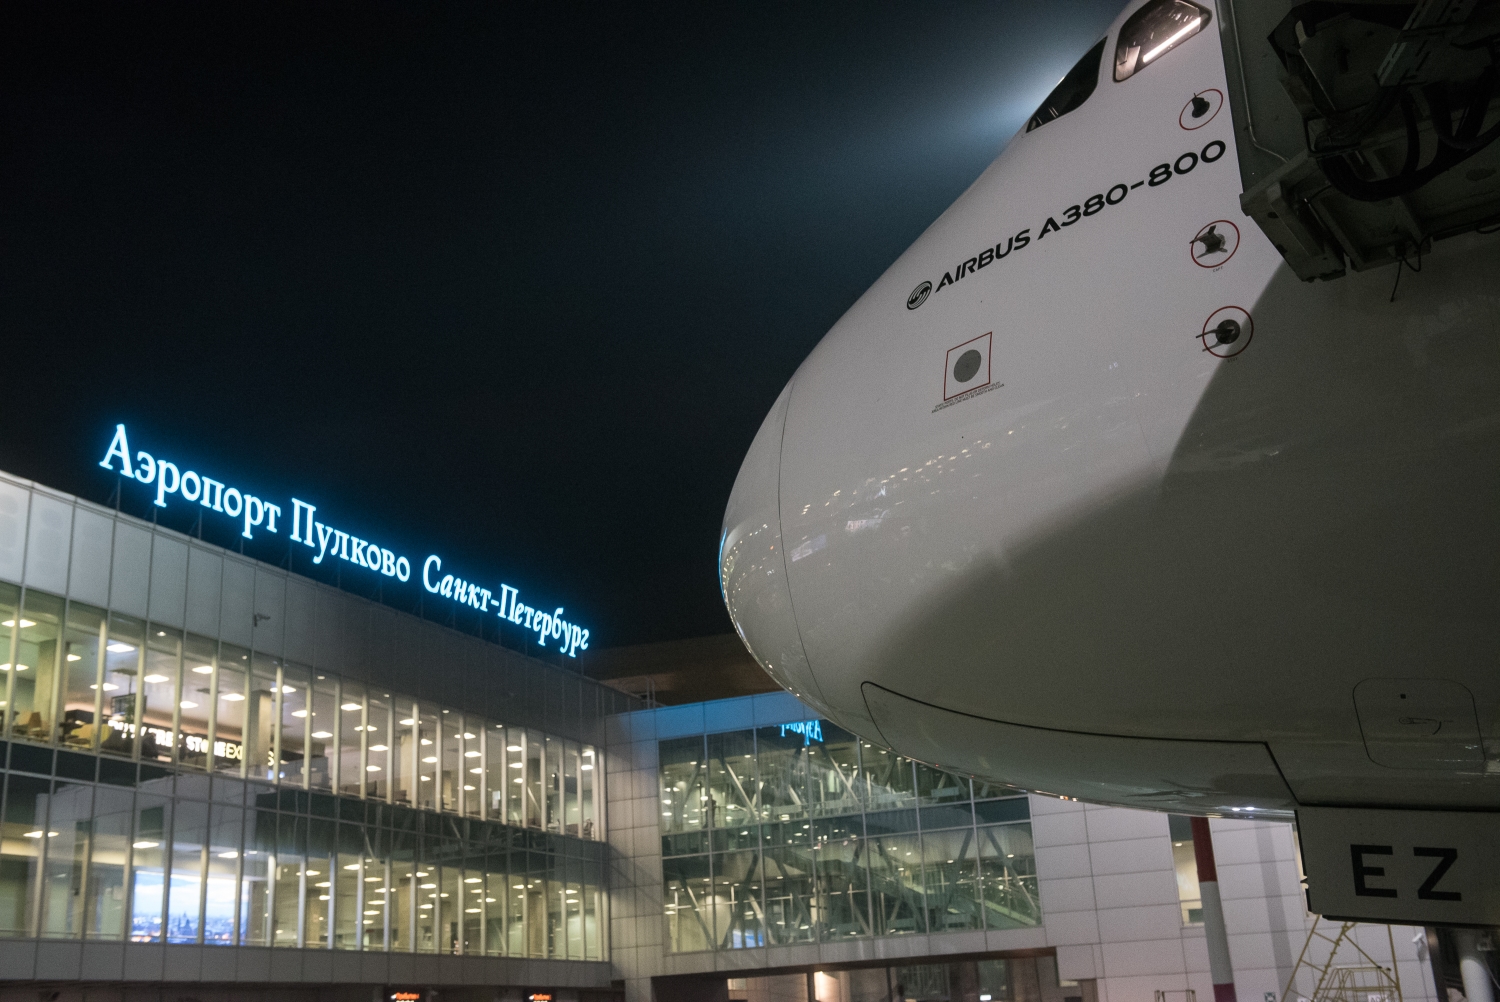 Пулково встретил самый большой пассажирский самолет Airbus A380